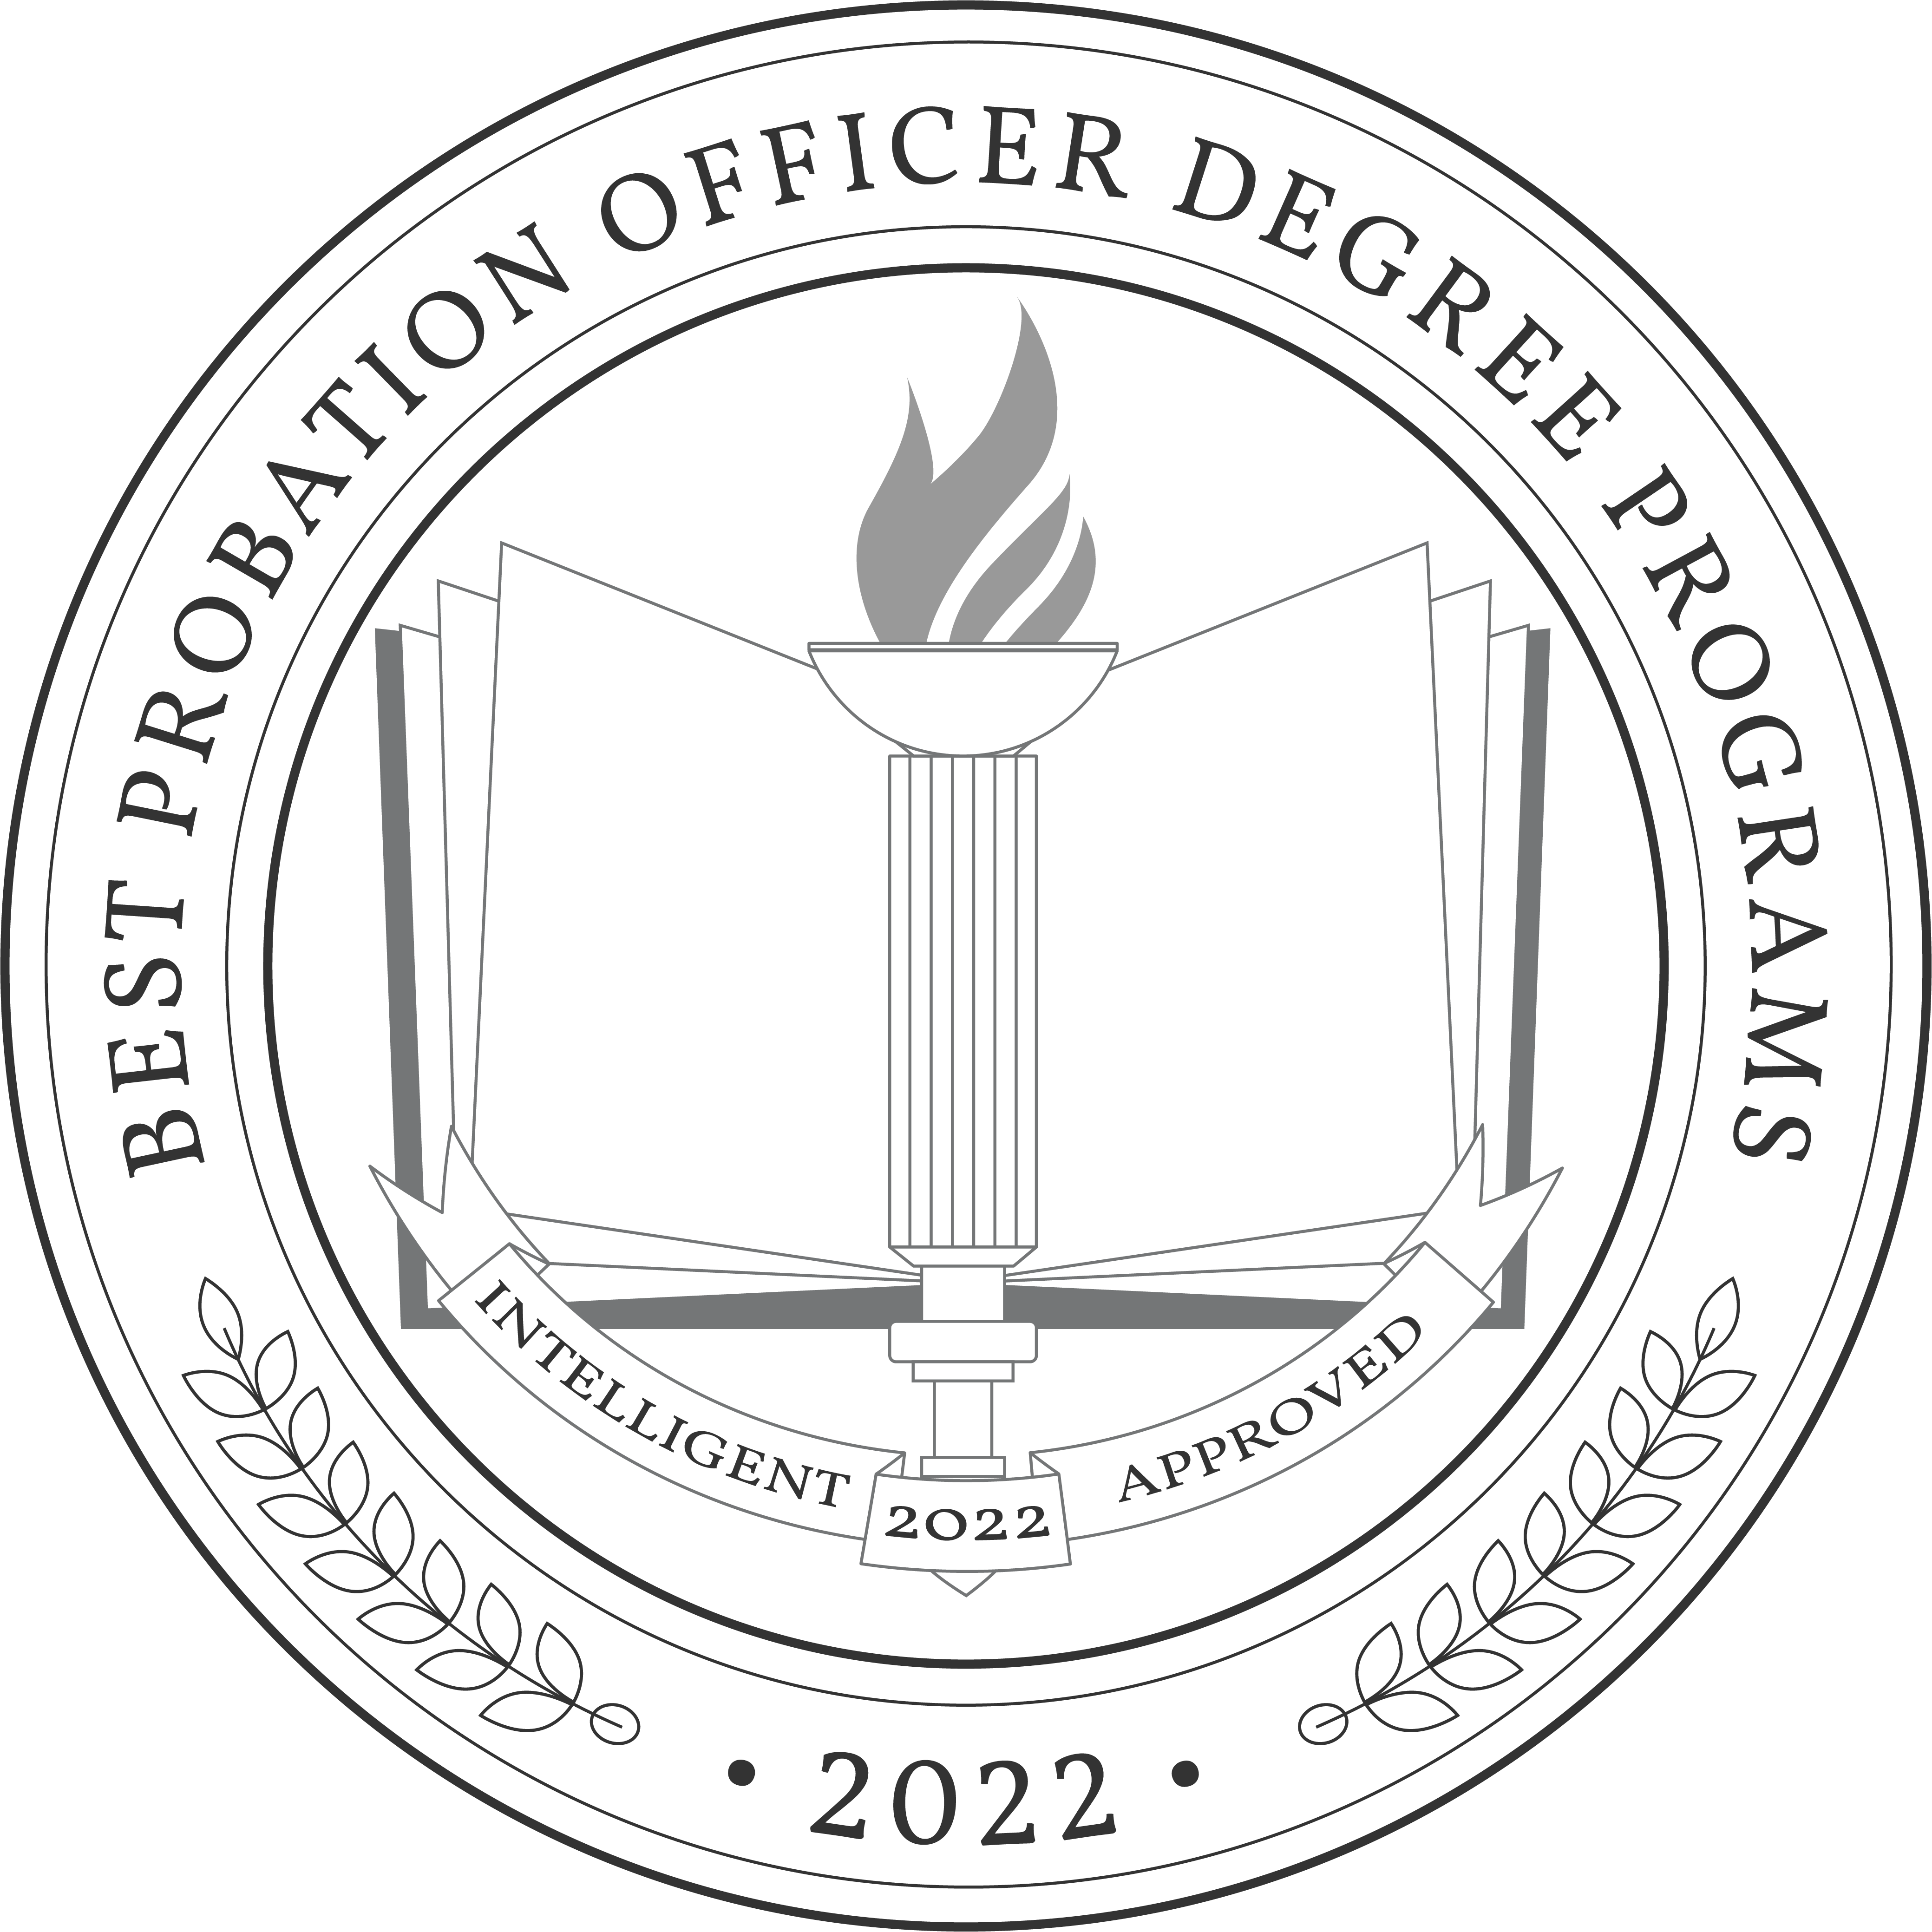 best-probation-officer-degree-programs-badge.png